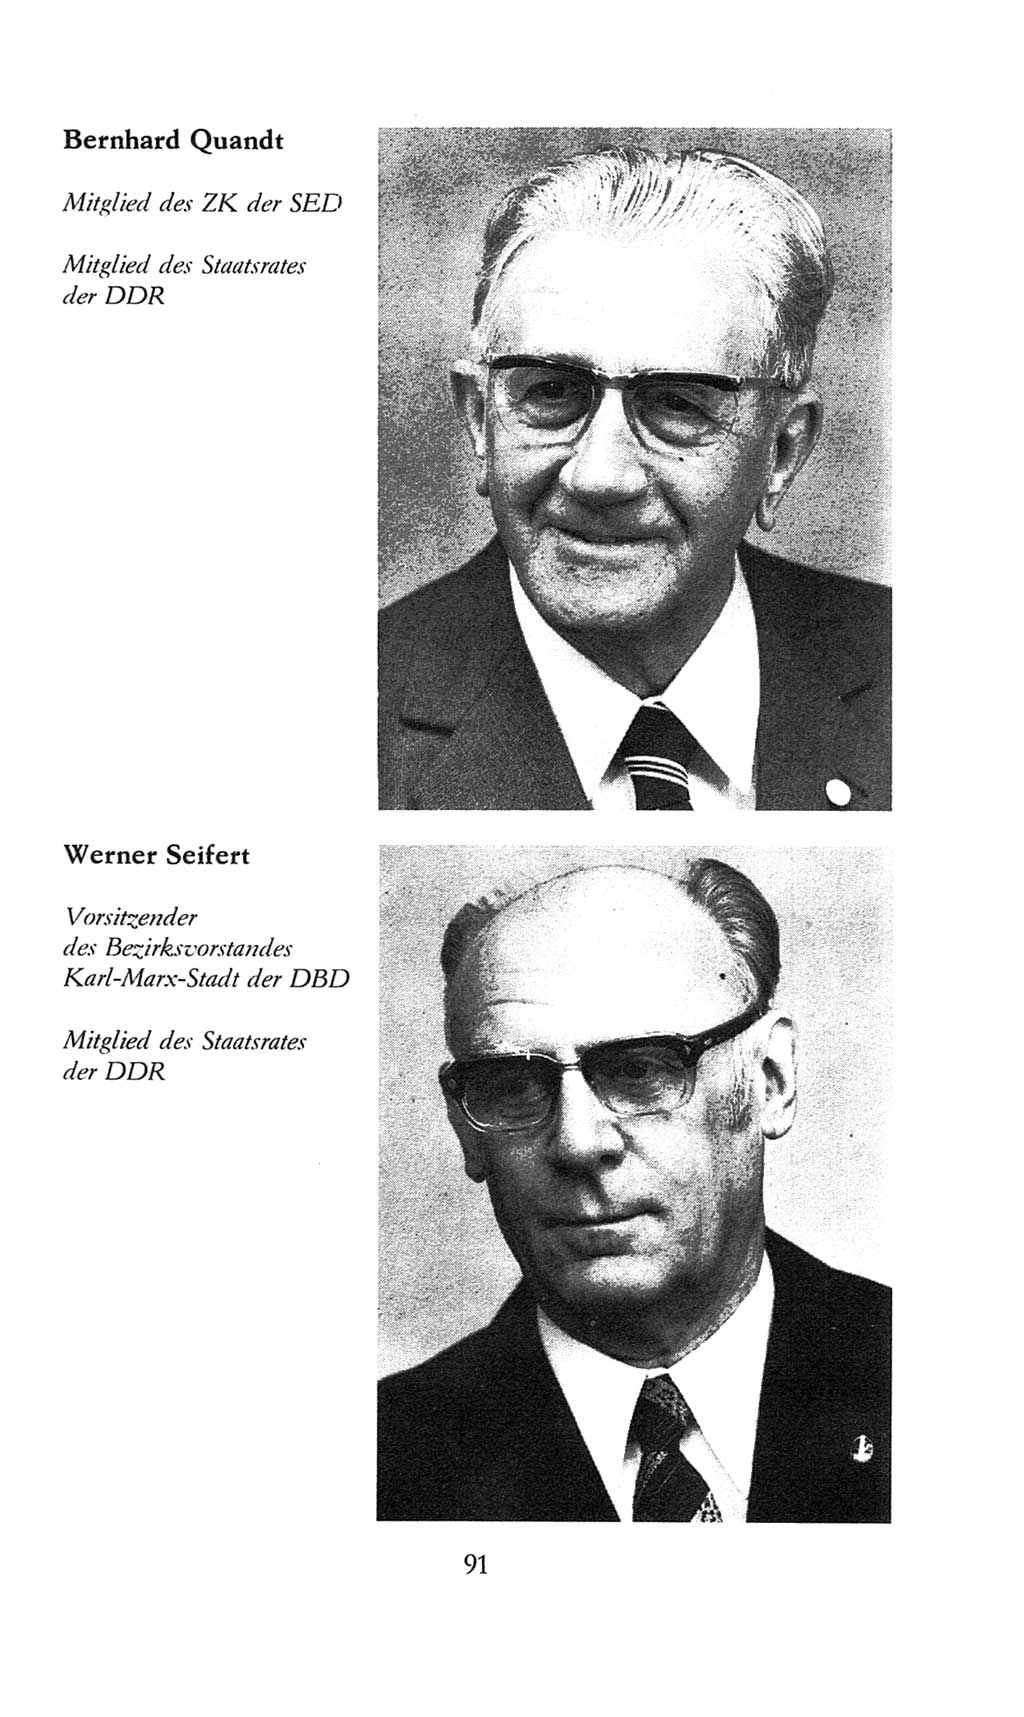 Volkskammer (VK) der Deutschen Demokratischen Republik (DDR), 8. Wahlperiode 1981-1986, Seite 91 (VK. DDR 8. WP. 1981-1986, S. 91)